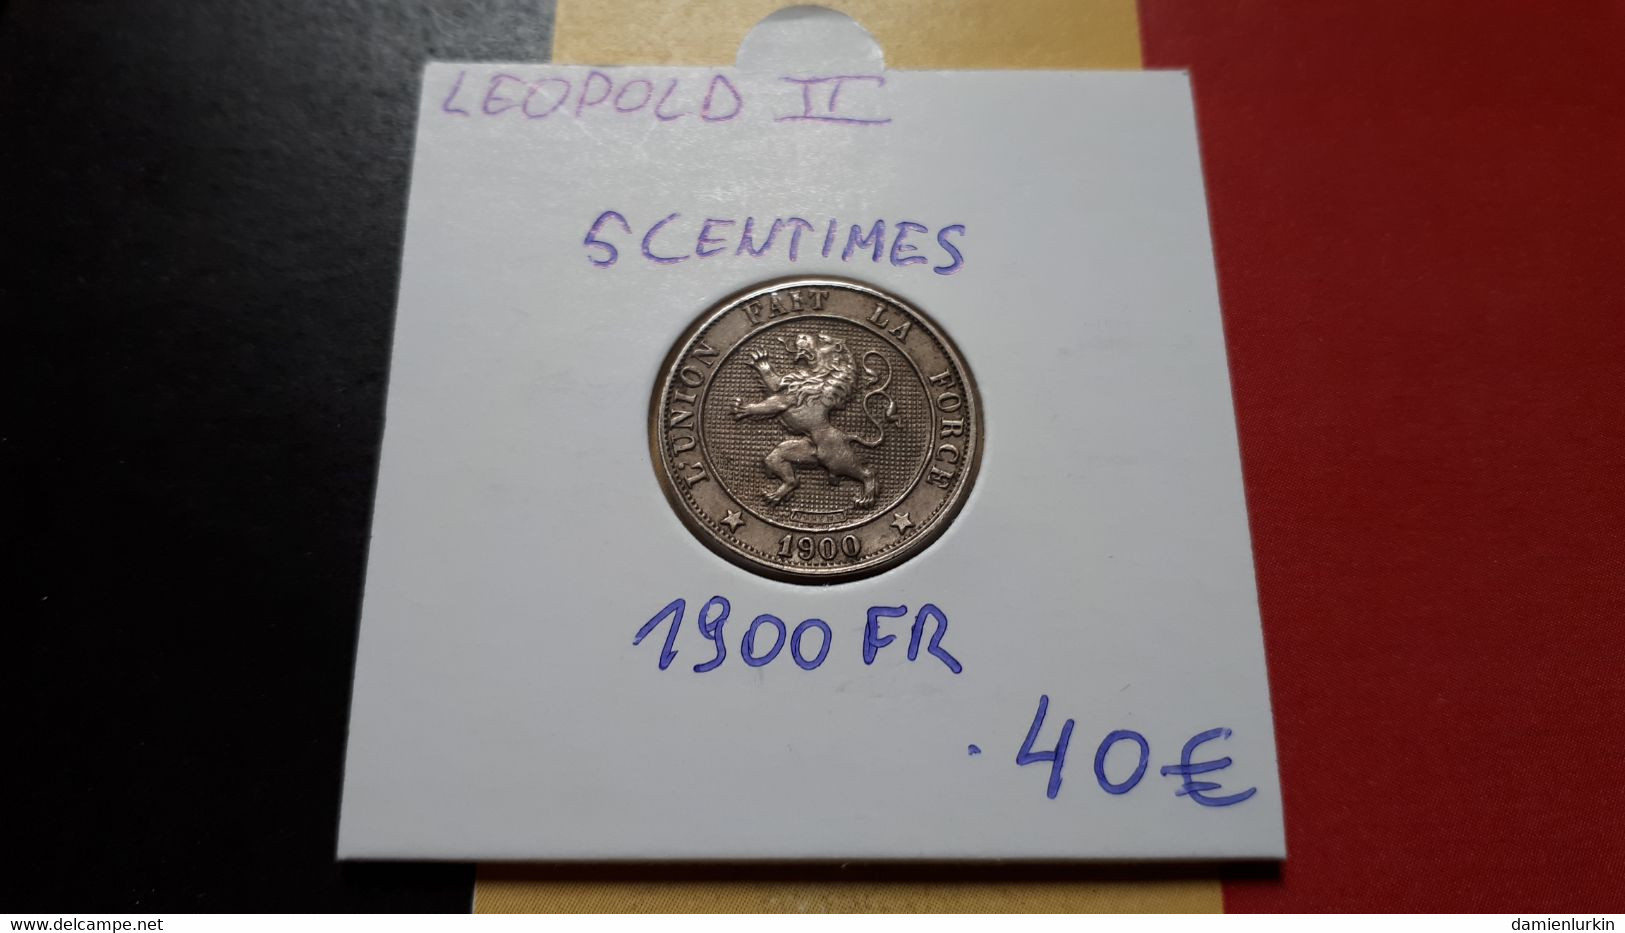 BELGIQUE LEOPOLD II RARE ET SUPERBE PRESQUE FDC 5 CENTIMES 1900 FR - 5 Cent